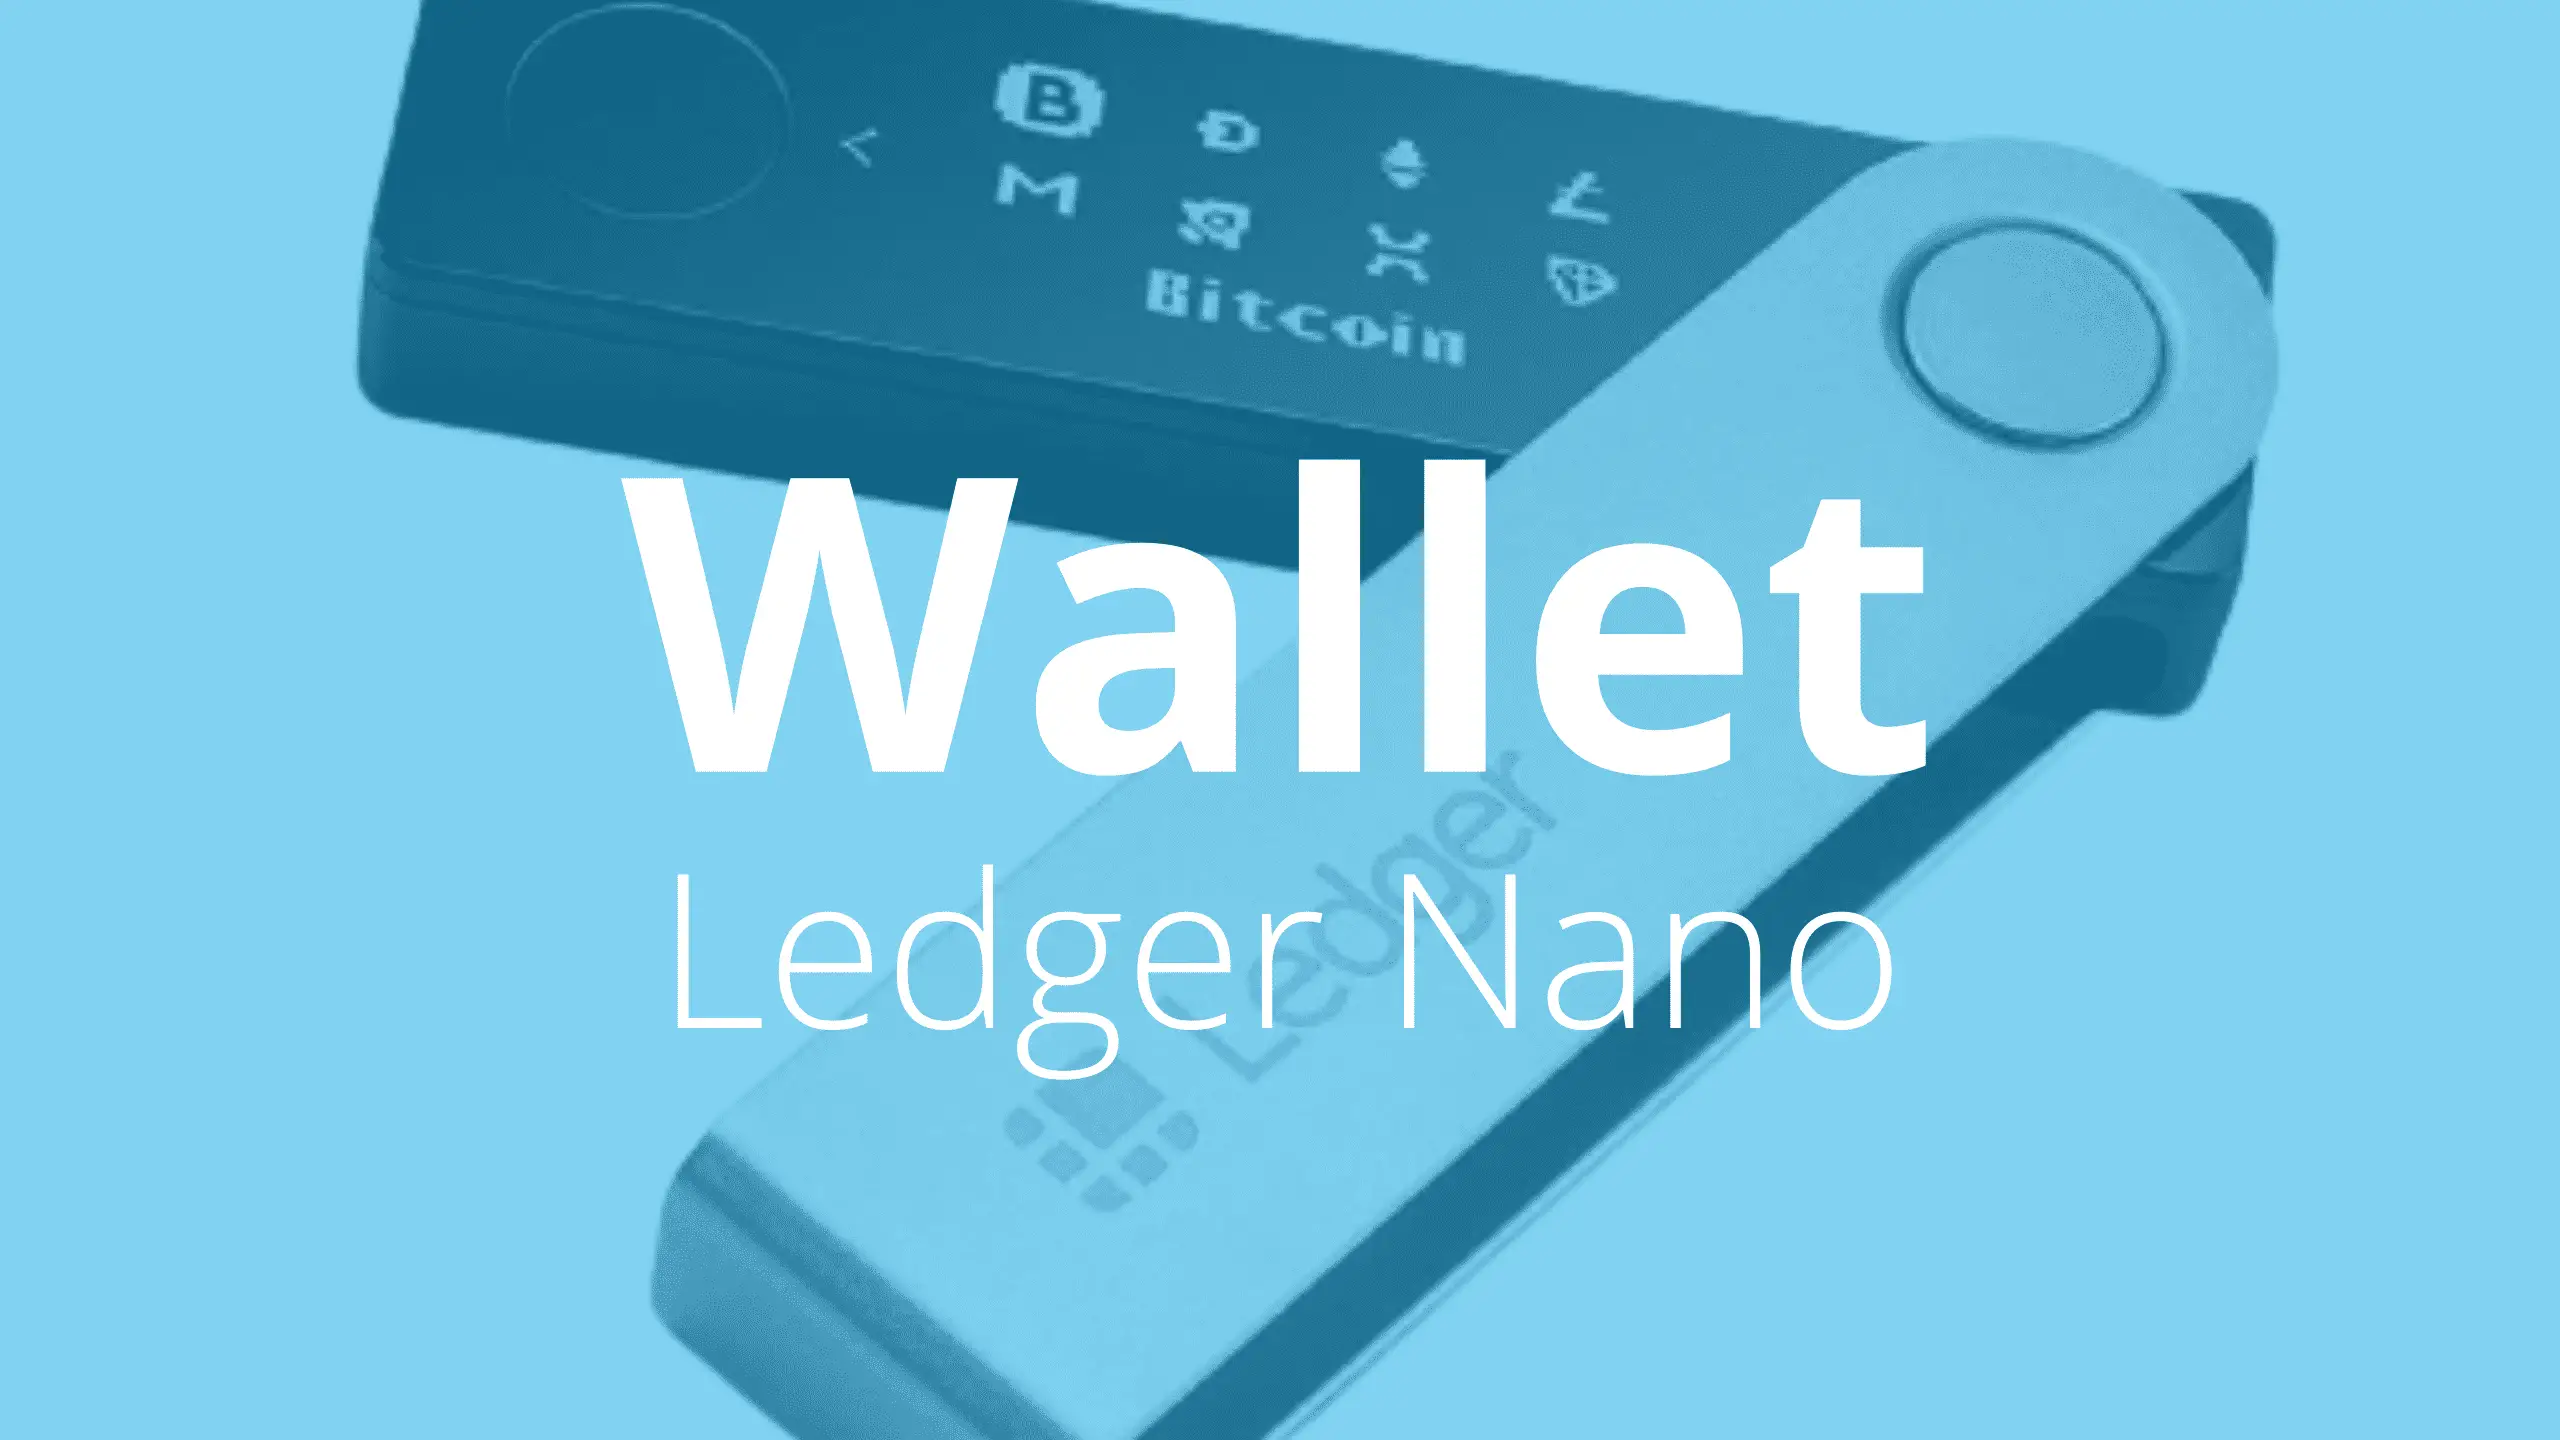 Test-du-Ledger-Nano-Wallet-Ledger-Crypto